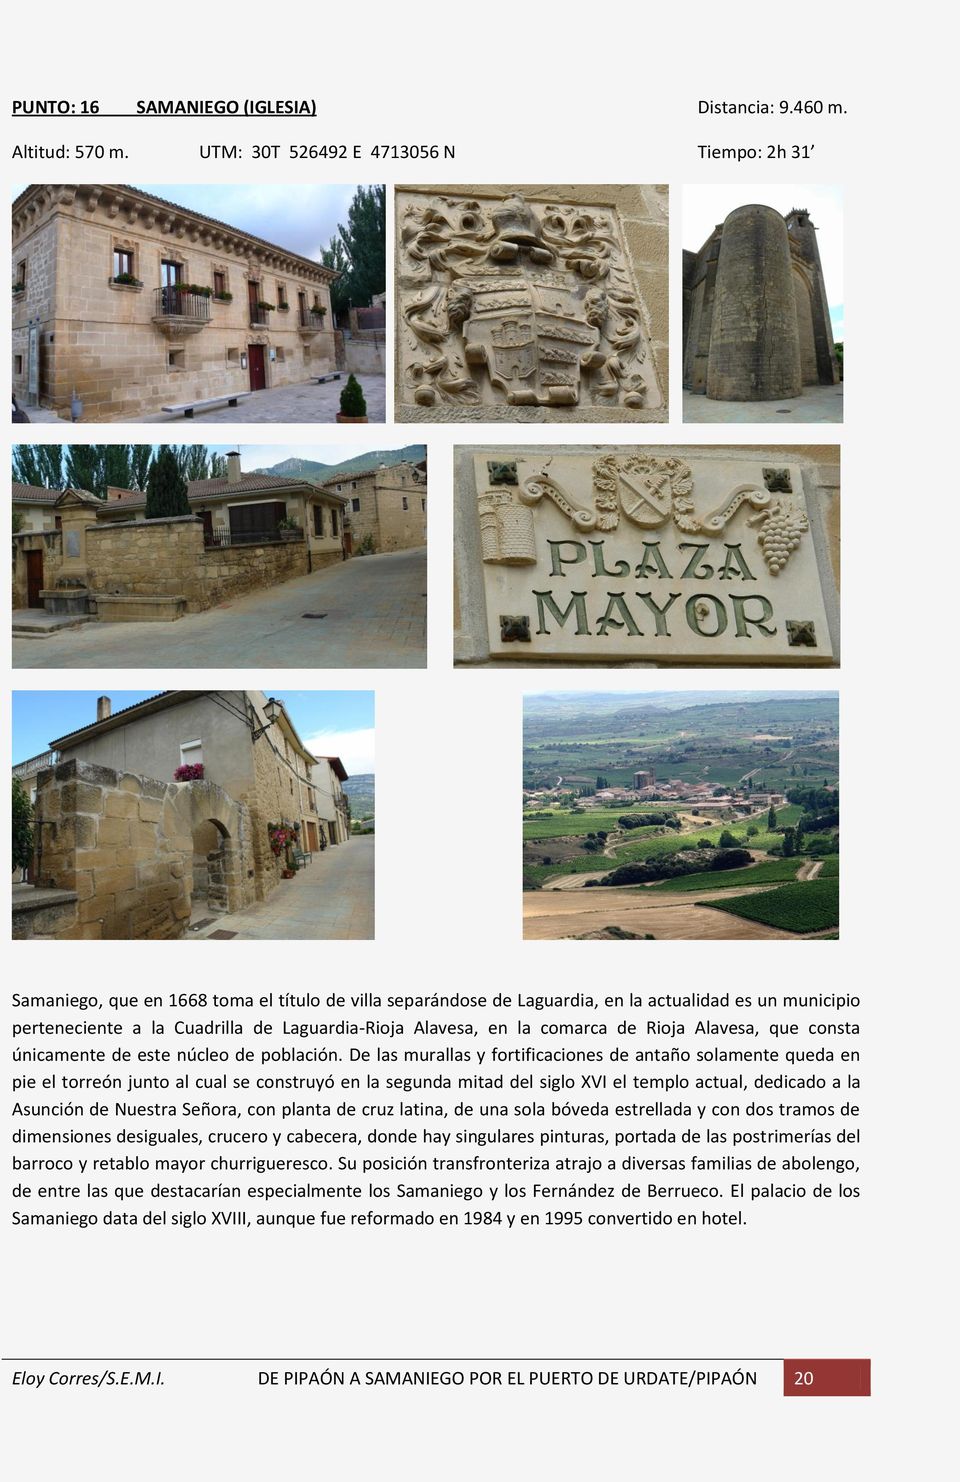 Alavesa, en la comarca de Rioja Alavesa, que consta únicamente de este núcleo de población.